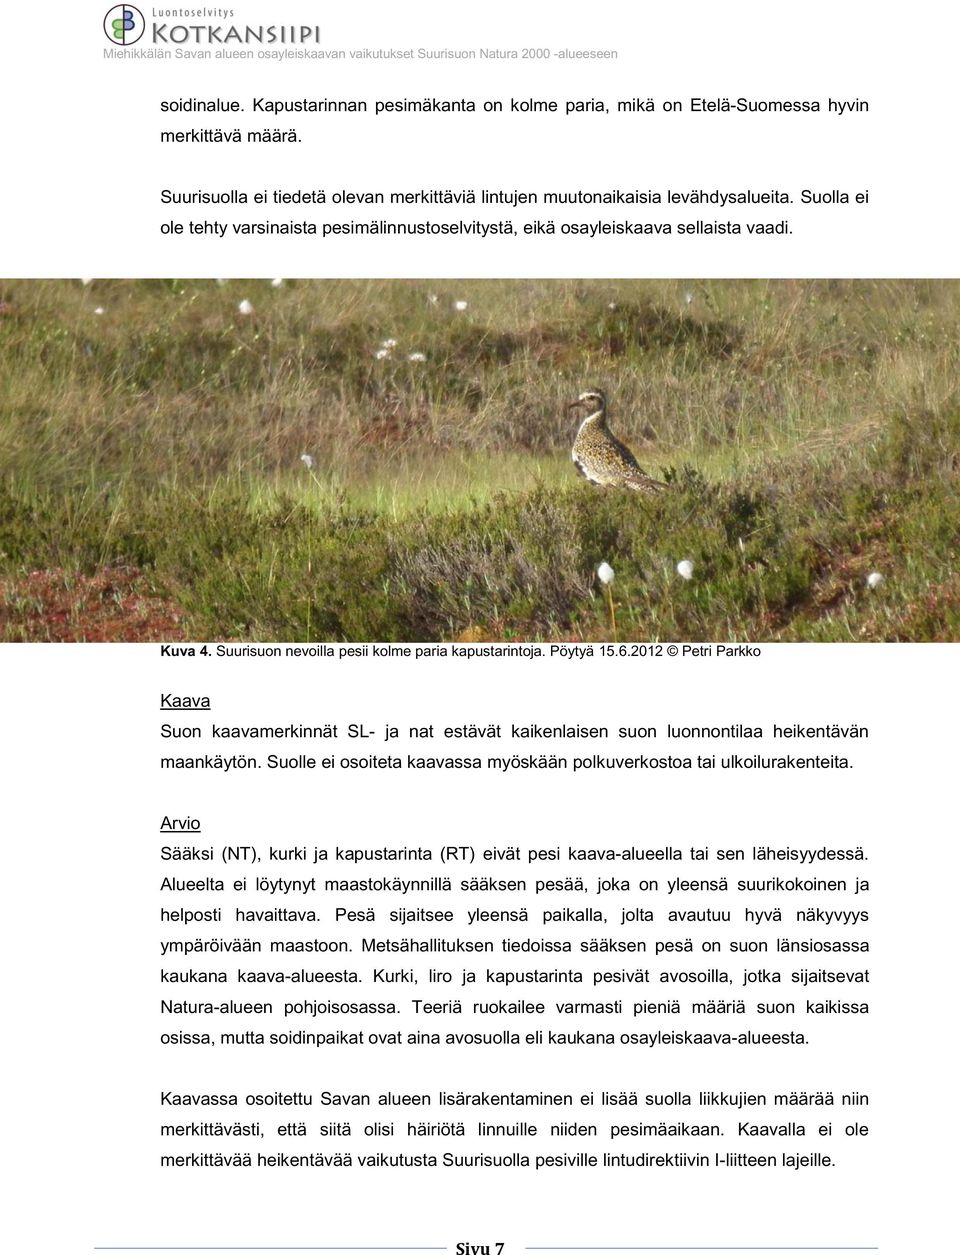 2012 Petri Parkko Kaava Suon kaavamerkinnät SL- ja nat estävät kaikenlaisen suon luonnontilaa heikentävän maankäytön. Suolle ei osoiteta kaavassa myöskään polkuverkostoa tai ulkoilurakenteita.